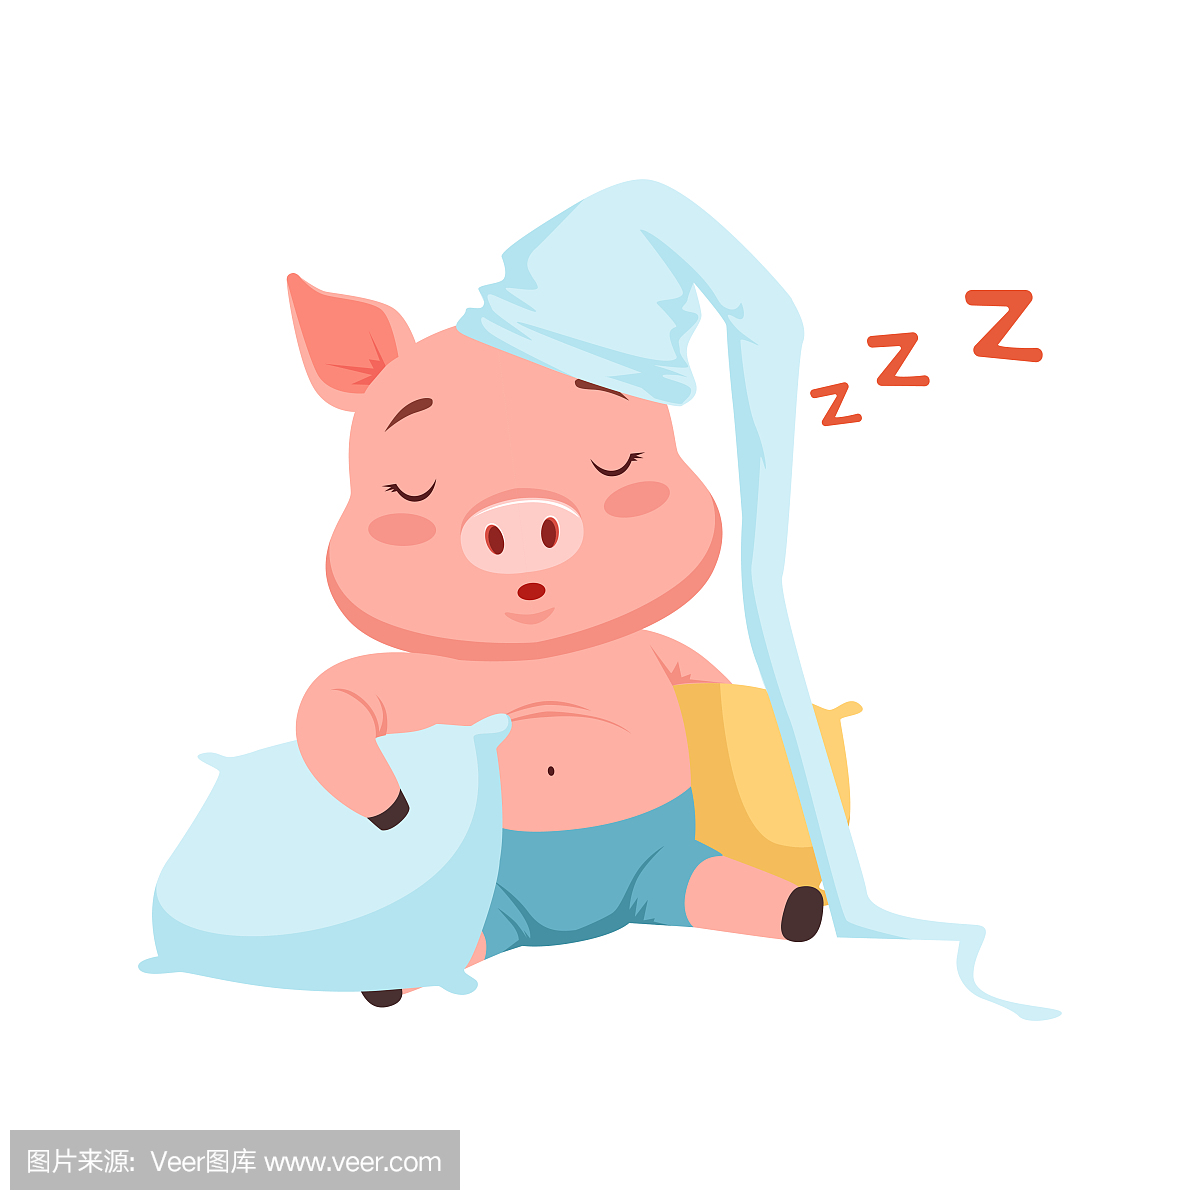 猪猪睡觉了猪猪睡觉斗图表情包-表情jfjlfoj-爱斗图